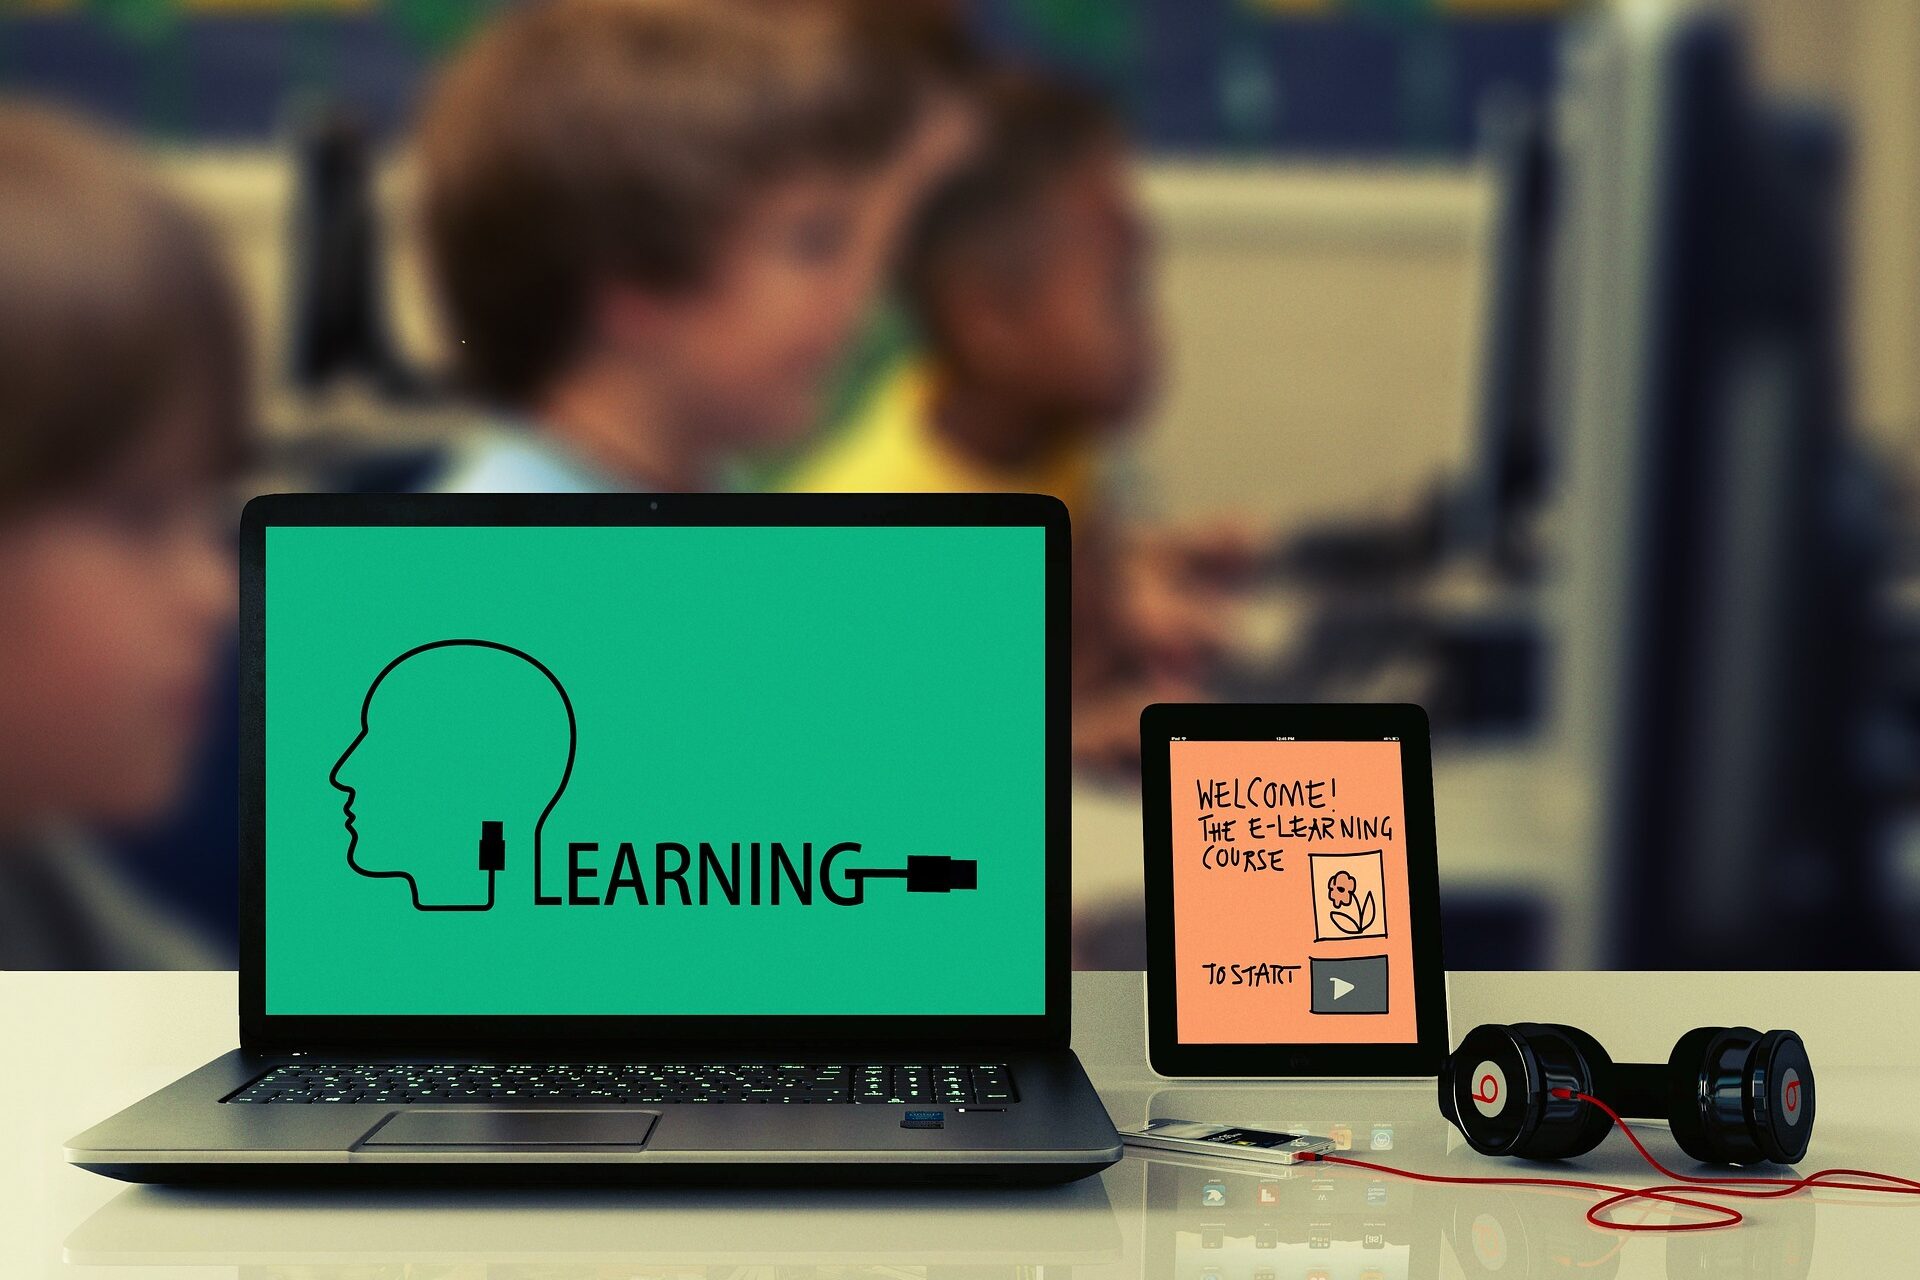 Abbildung eines PCs und eines Tablets zur Veranschaulichung von E-Learning